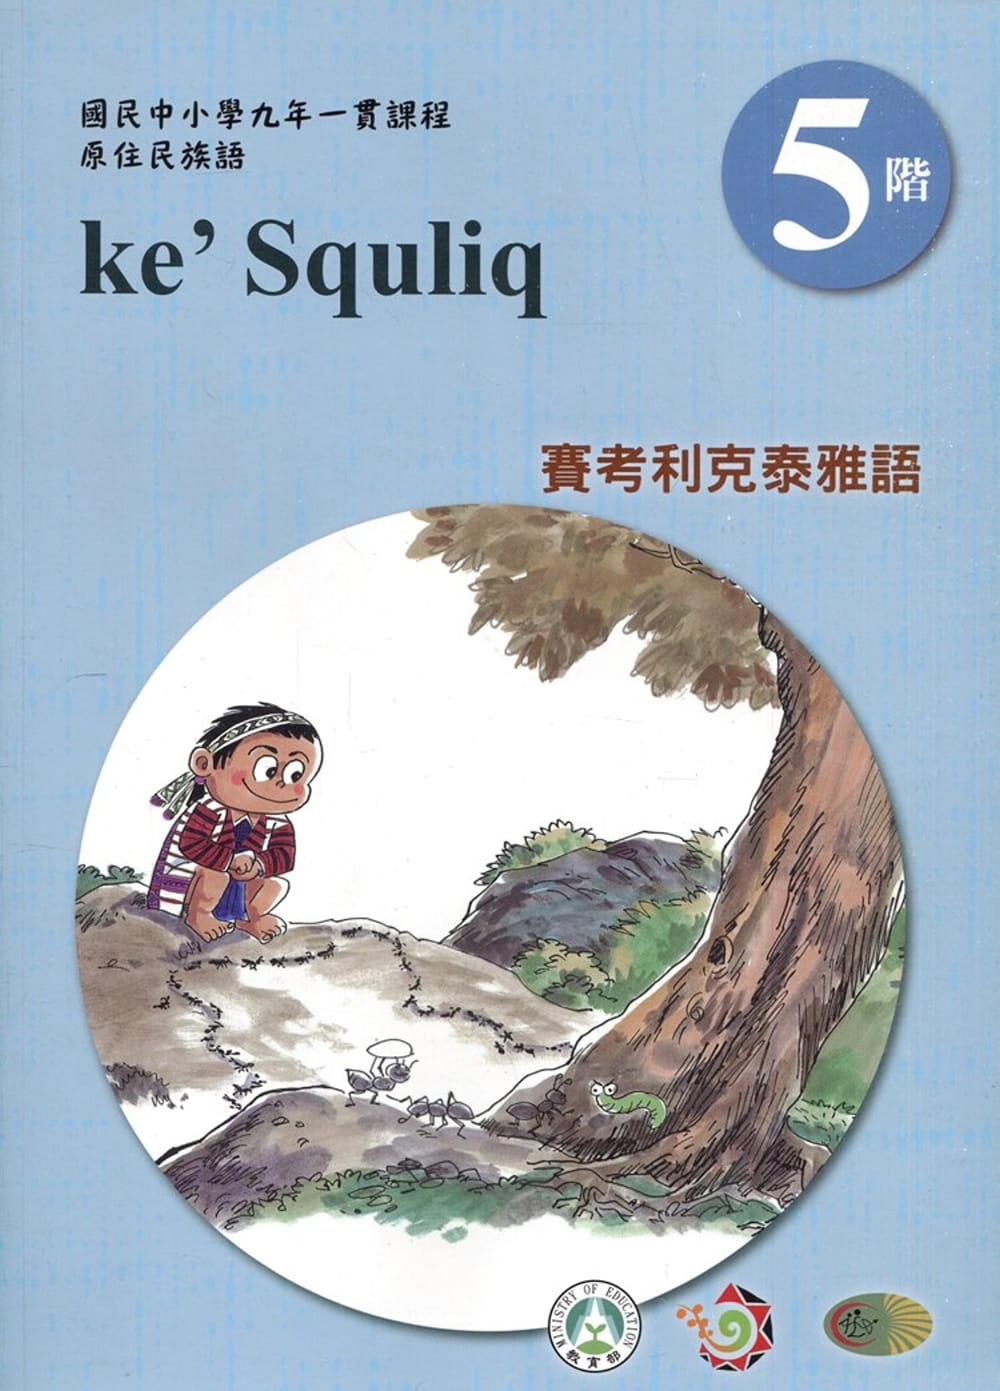 賽考利克泰雅語學習手冊第5階(附光碟)3版2刷